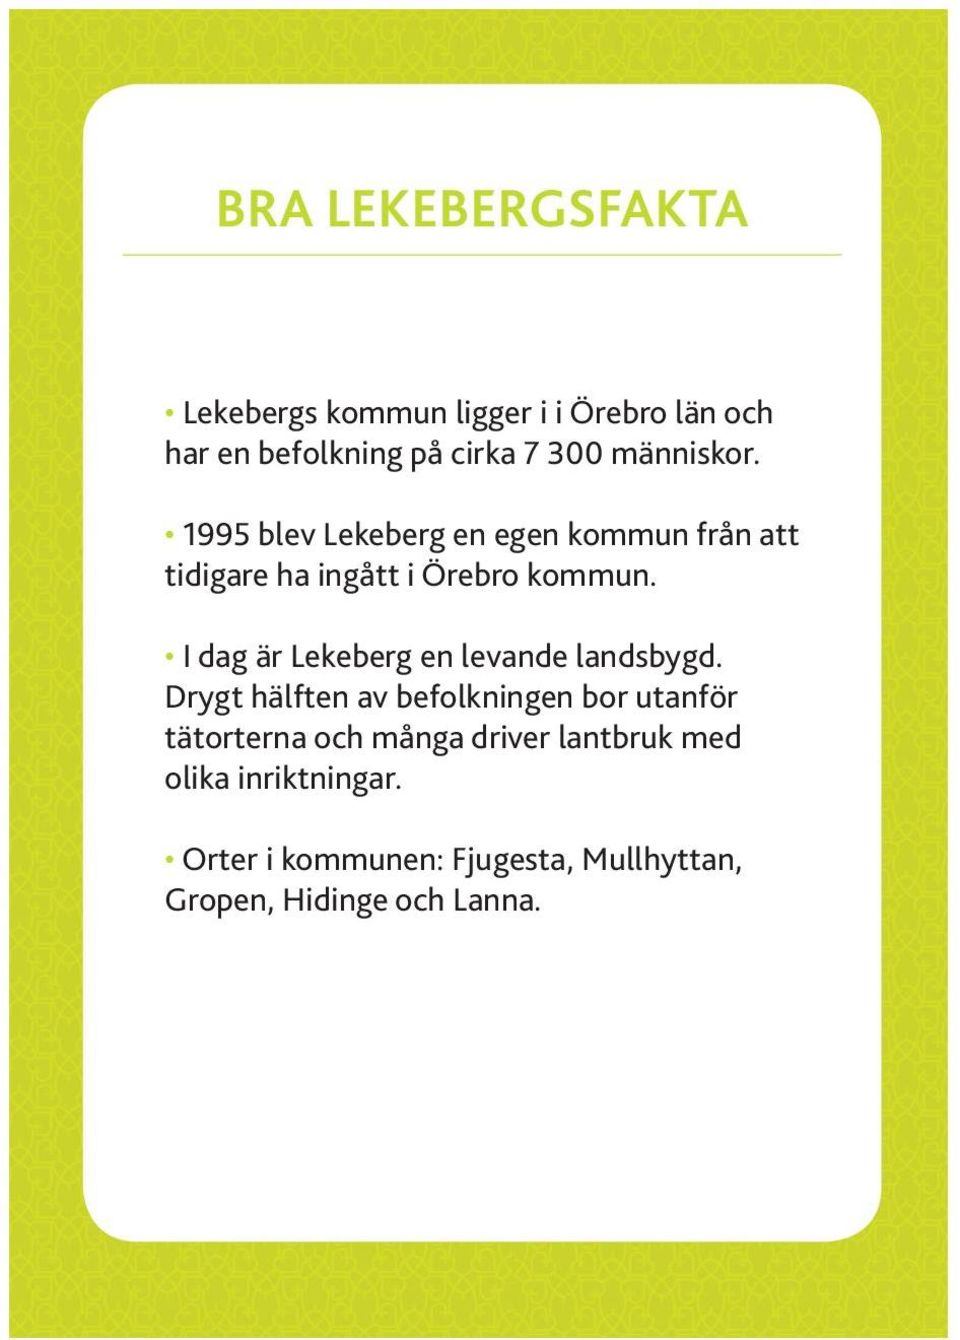 I dag är Lekeberg en levande landsbygd.